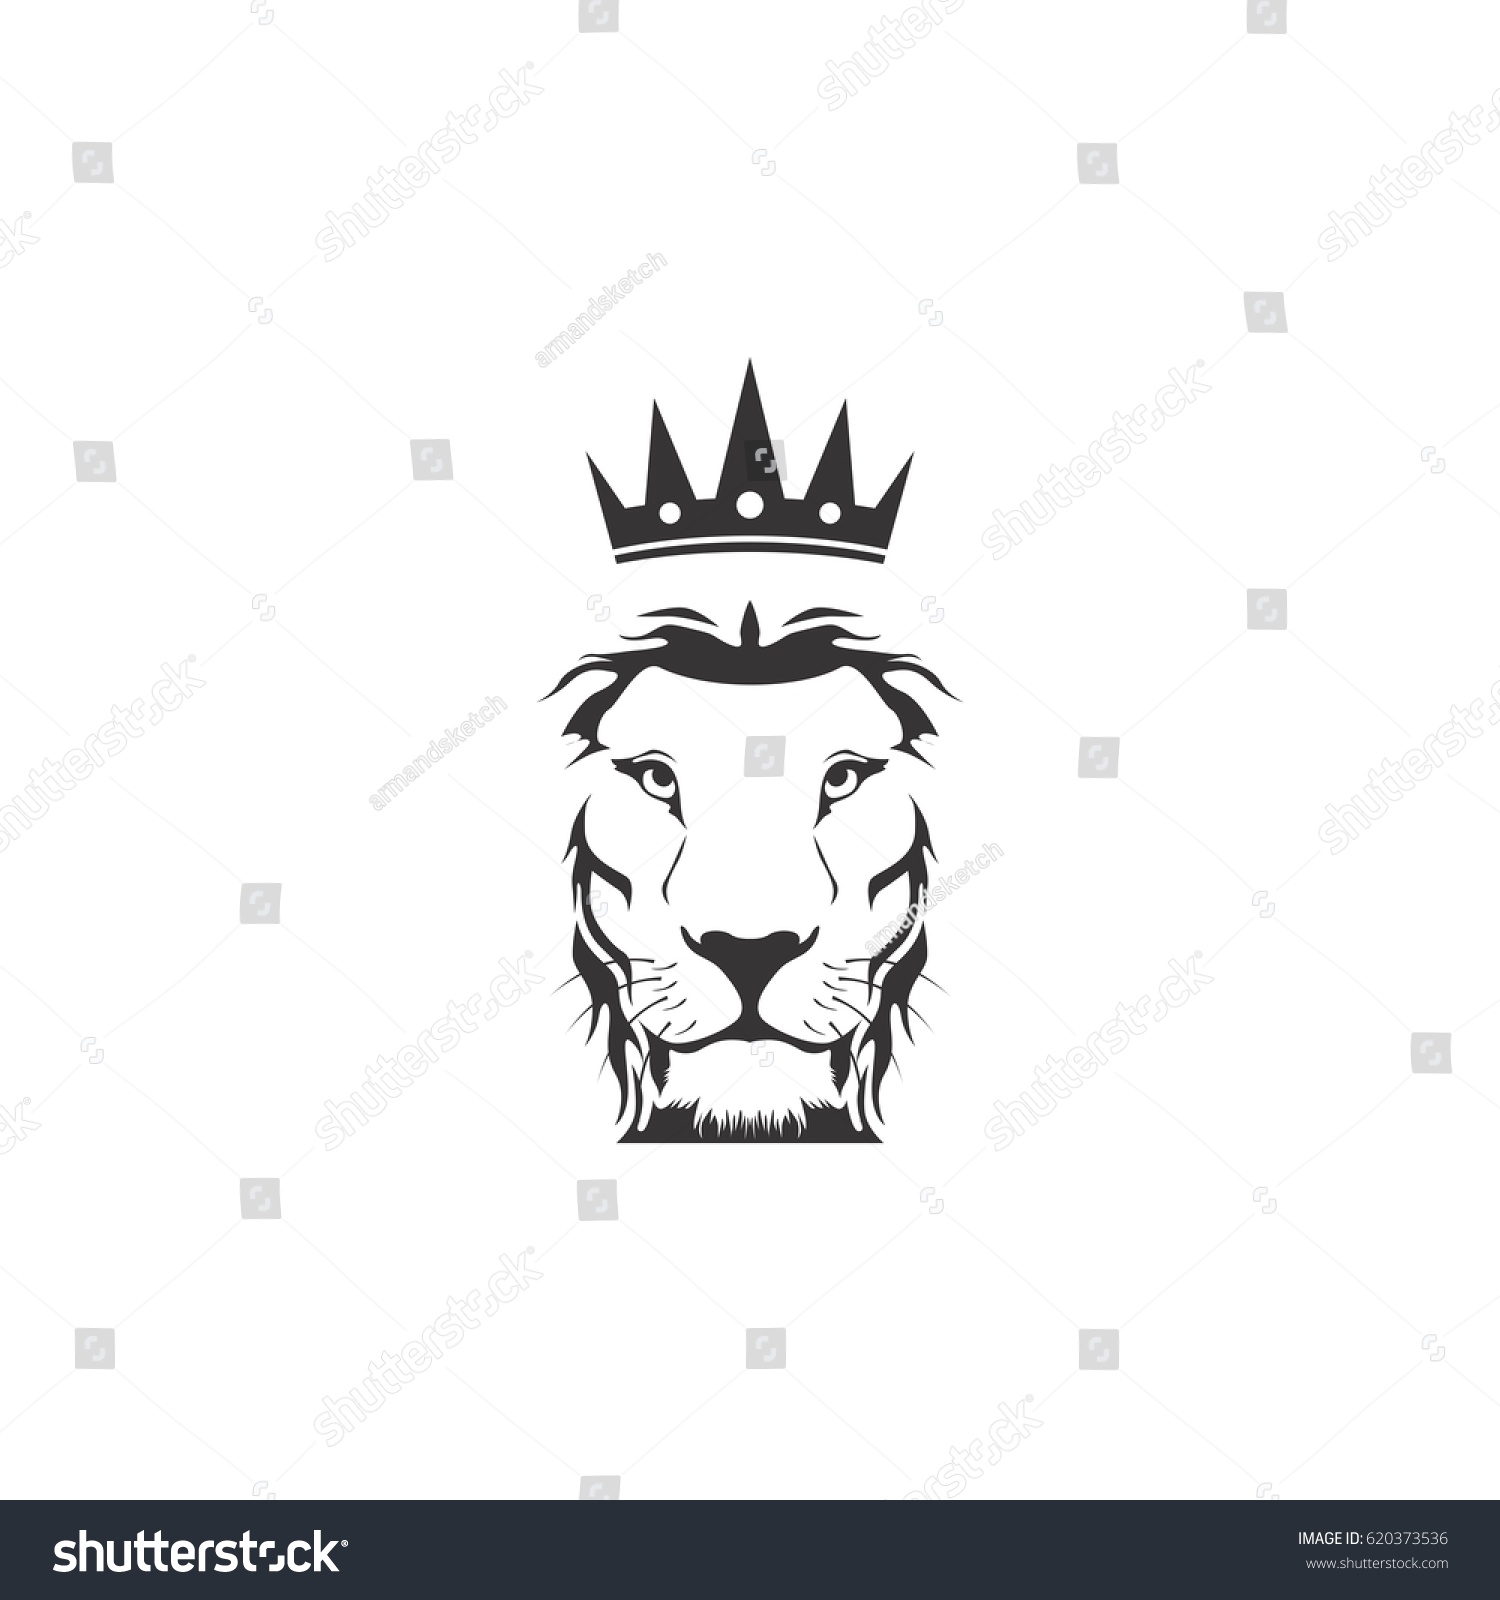 Лев и львица с короной вектор